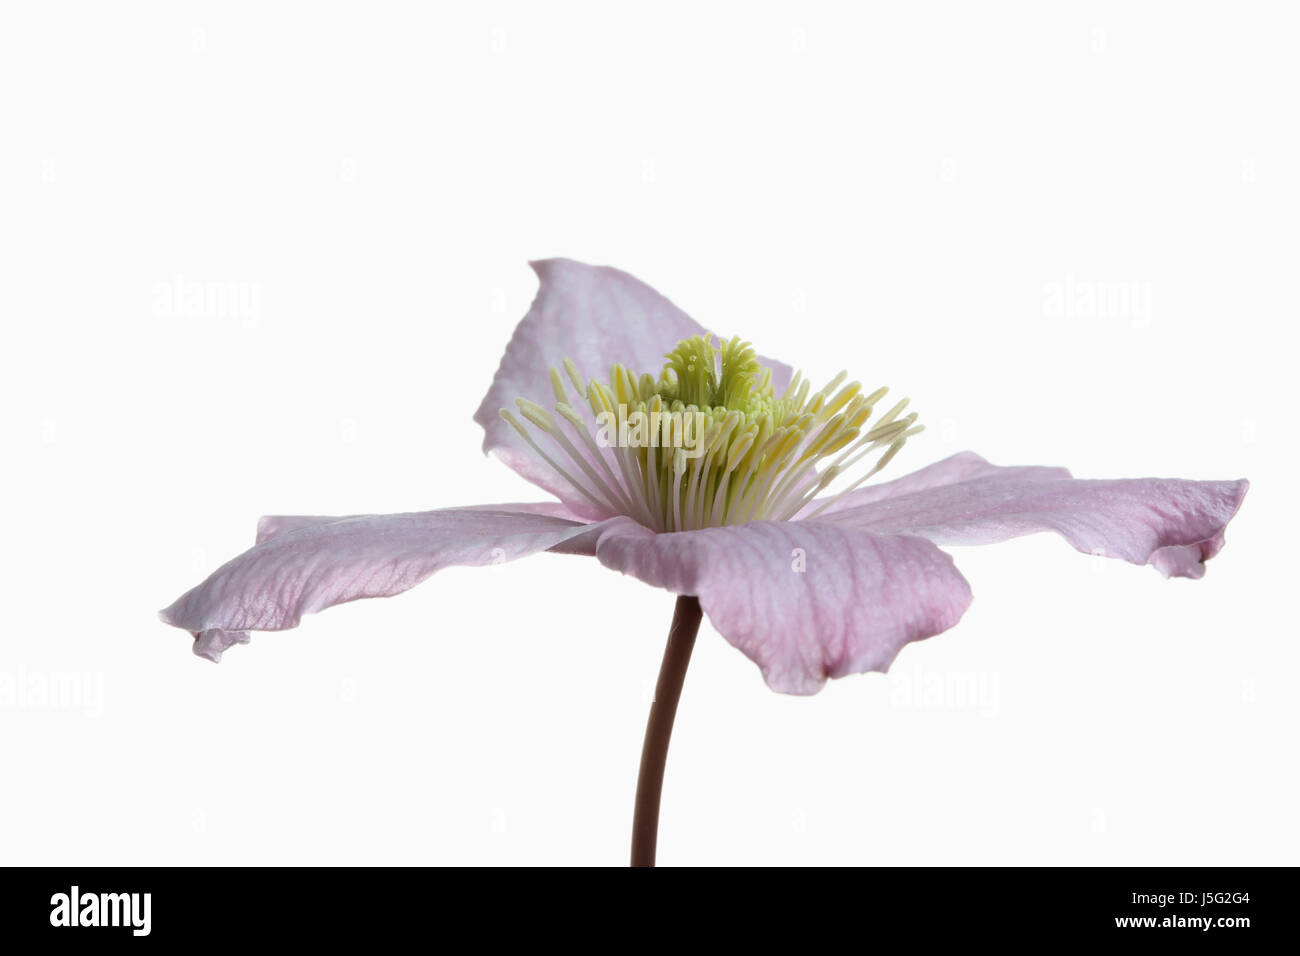 Clematis, Clematis Montana Wilsonii, Studio shot of single pink flower showing stamen. Stock Photo